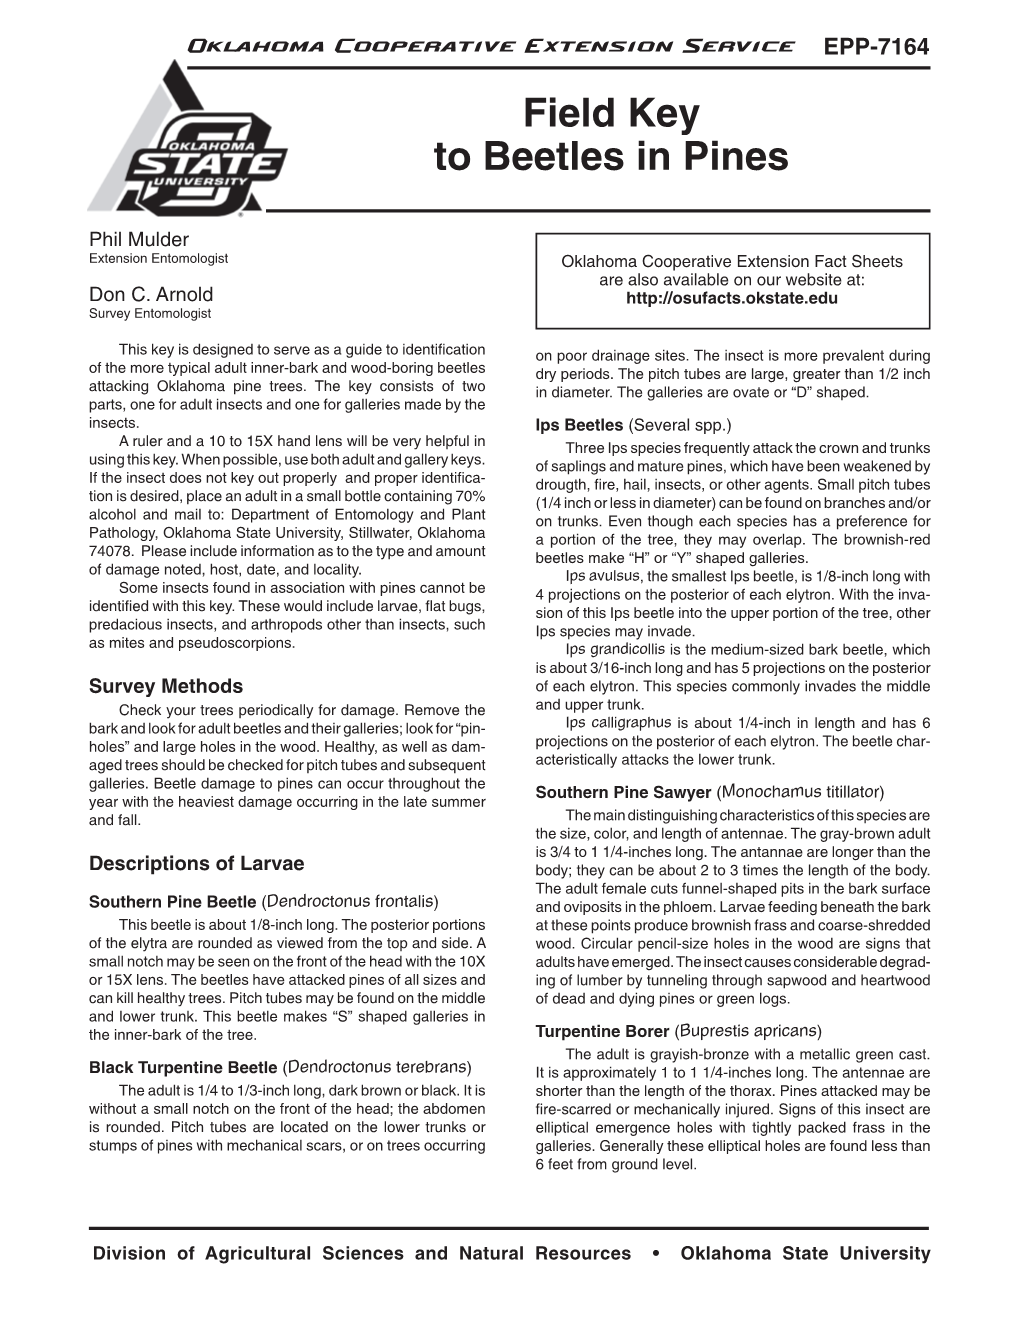 Field Key to Beetles in Pines